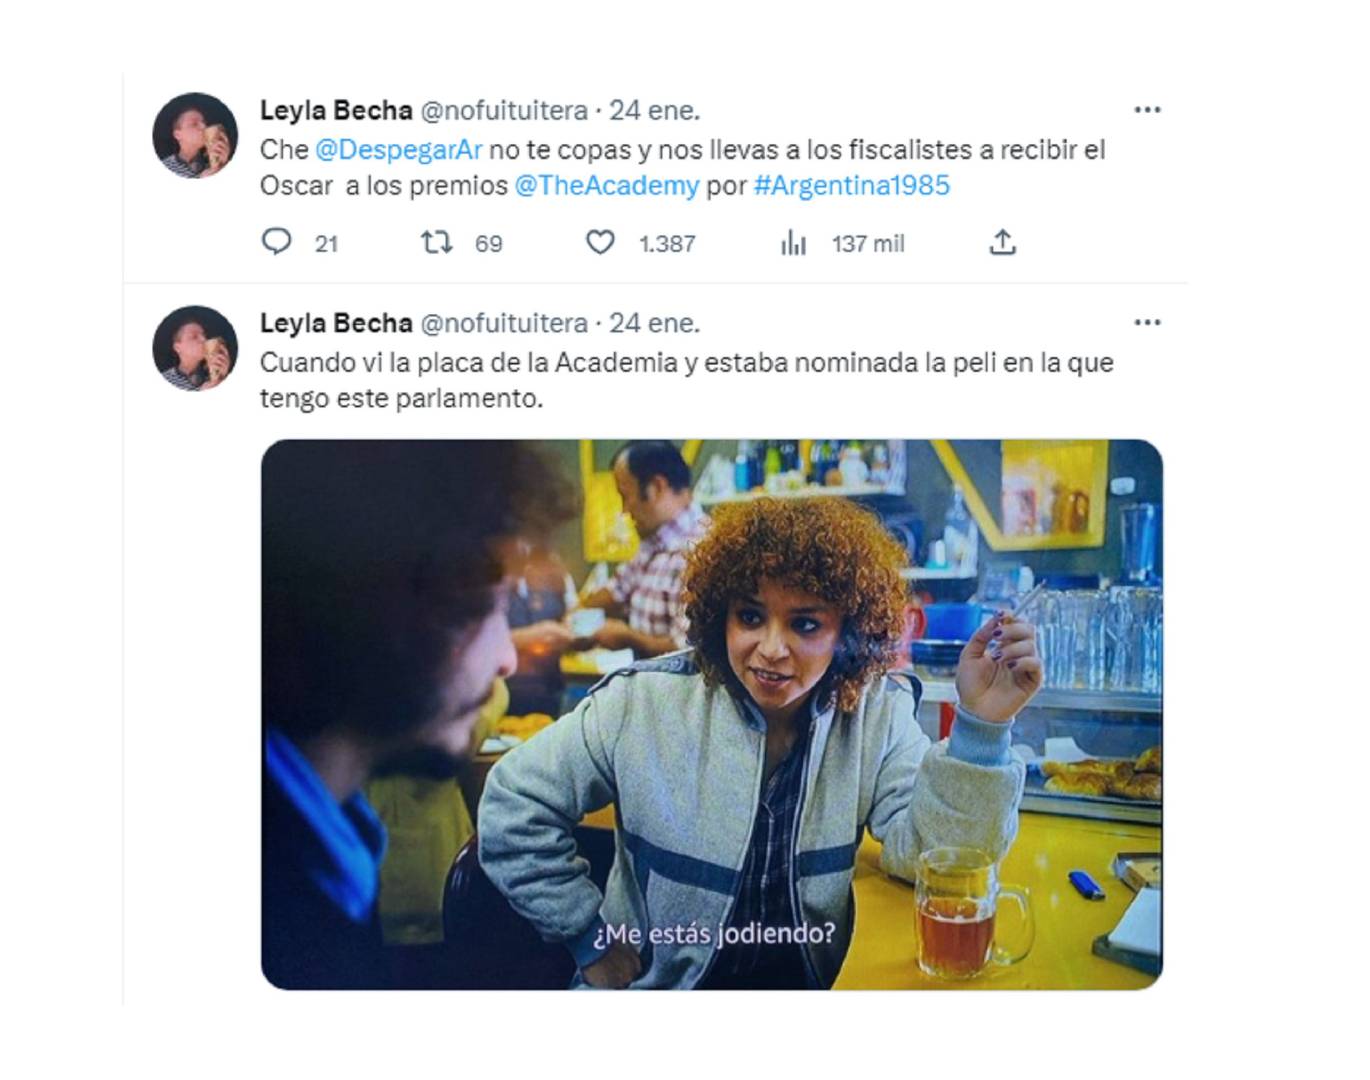 Los divertidos mensajes de Leyla Bechara en Twitter cuando salió la nominación a los Oscar
